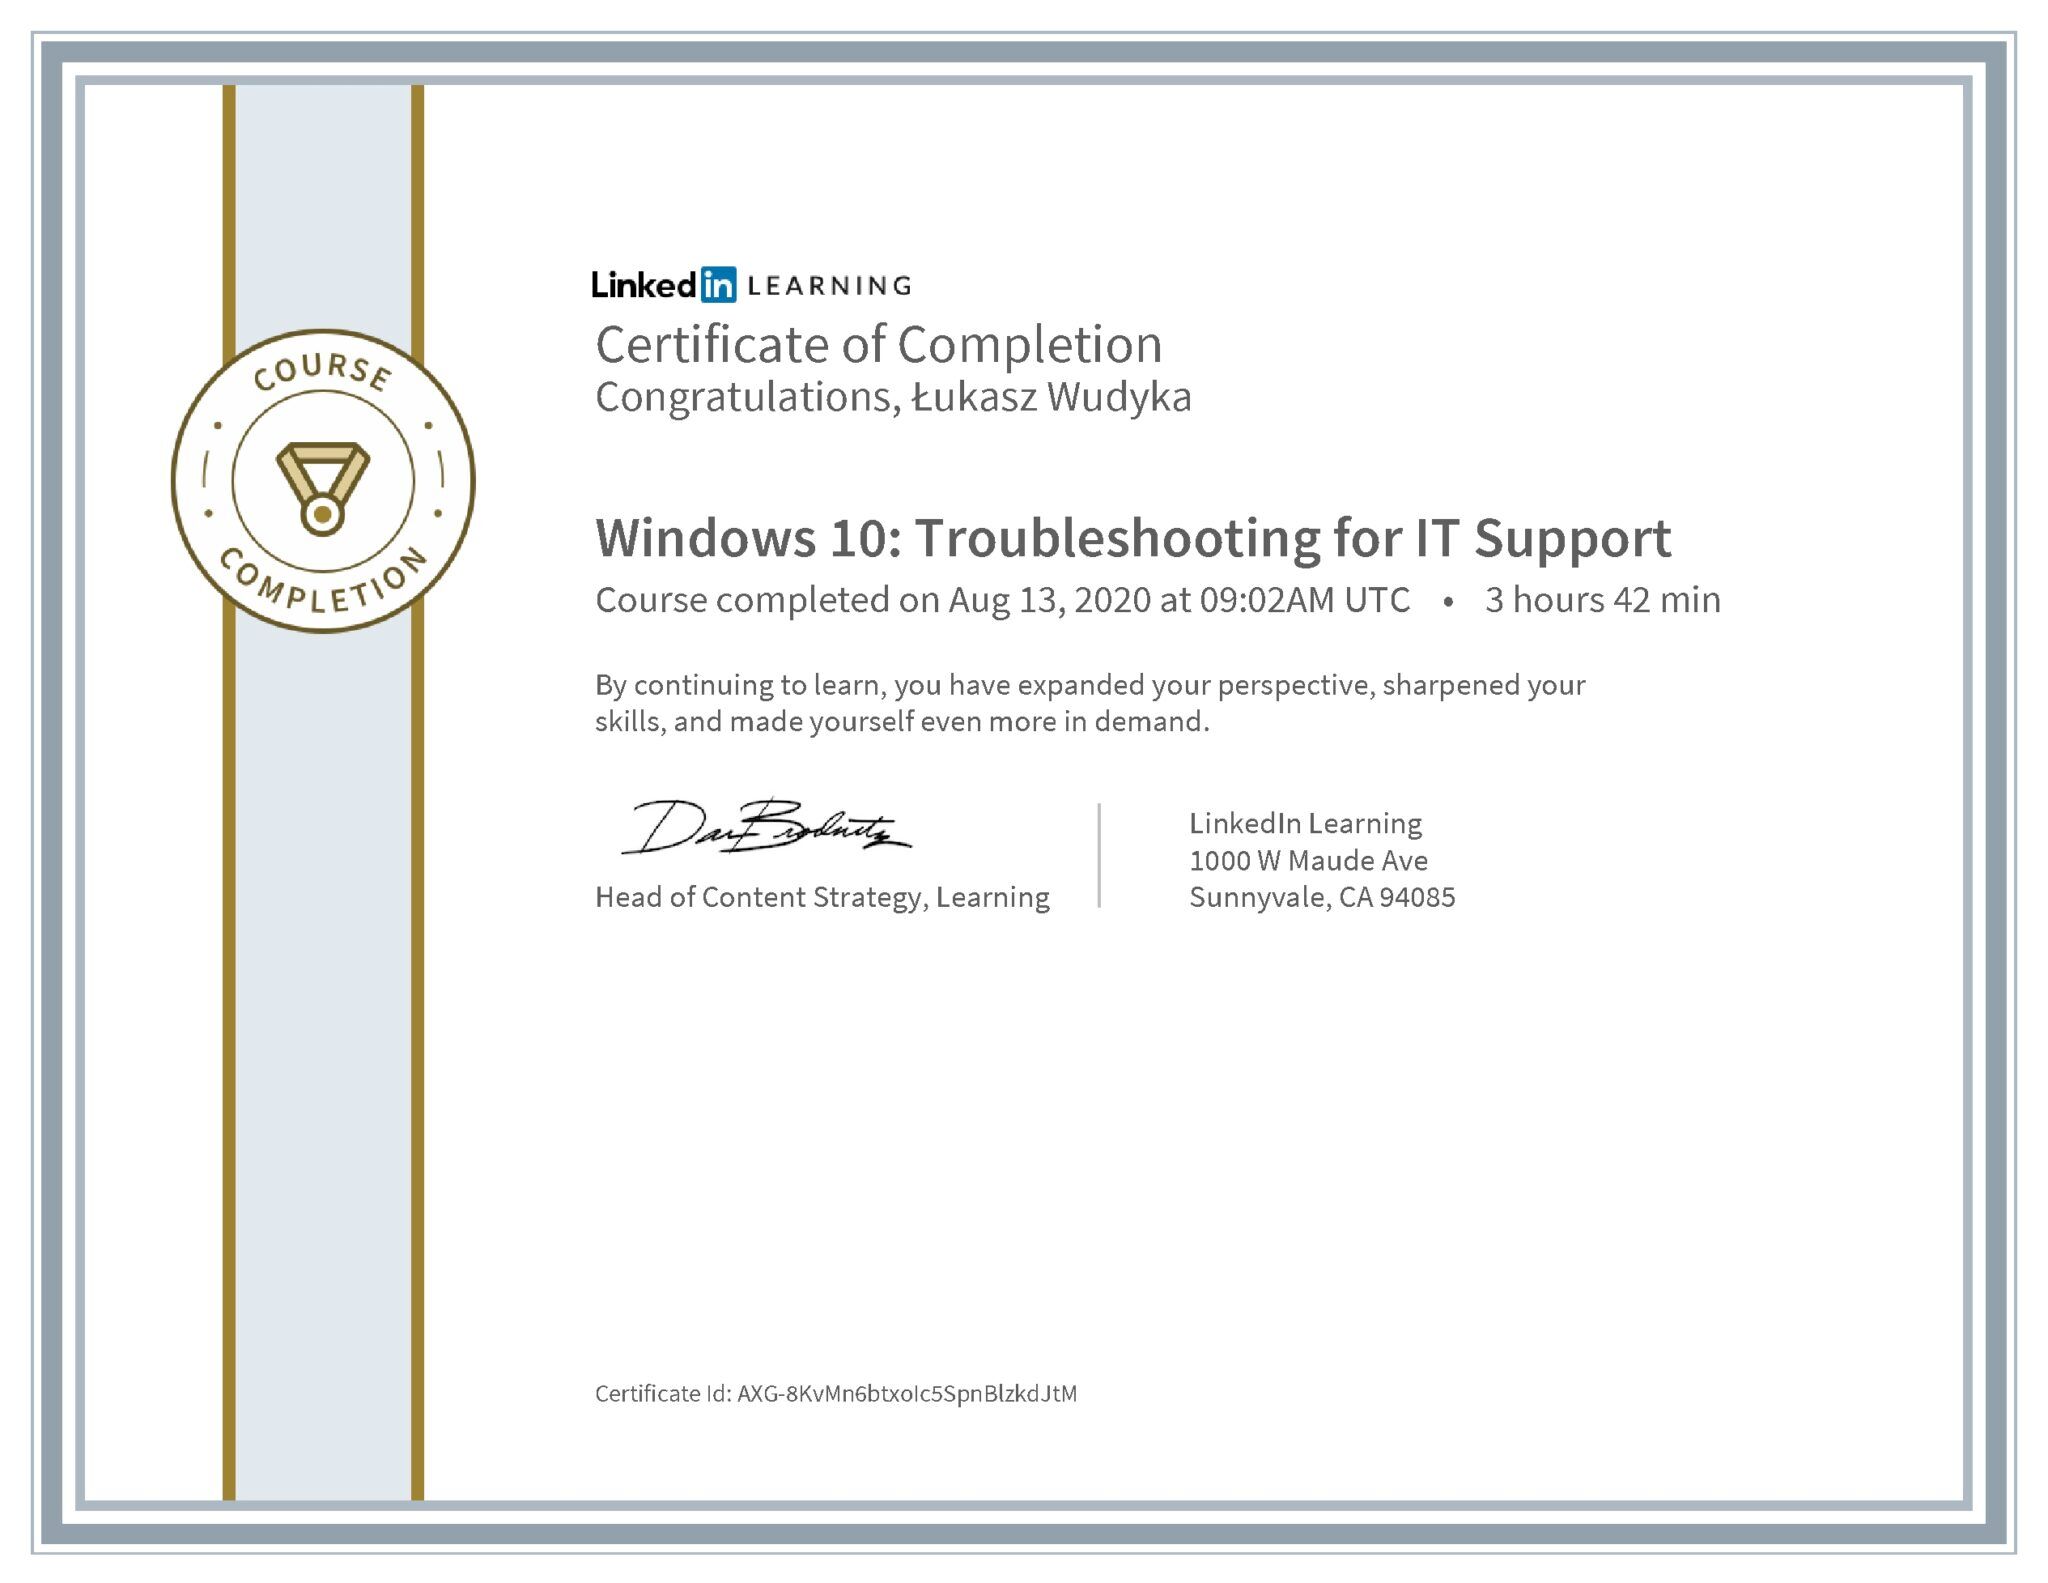 Łukasz Wudyka certyfikat LinkedIn Windows 10: Troubleshooting for IT Support